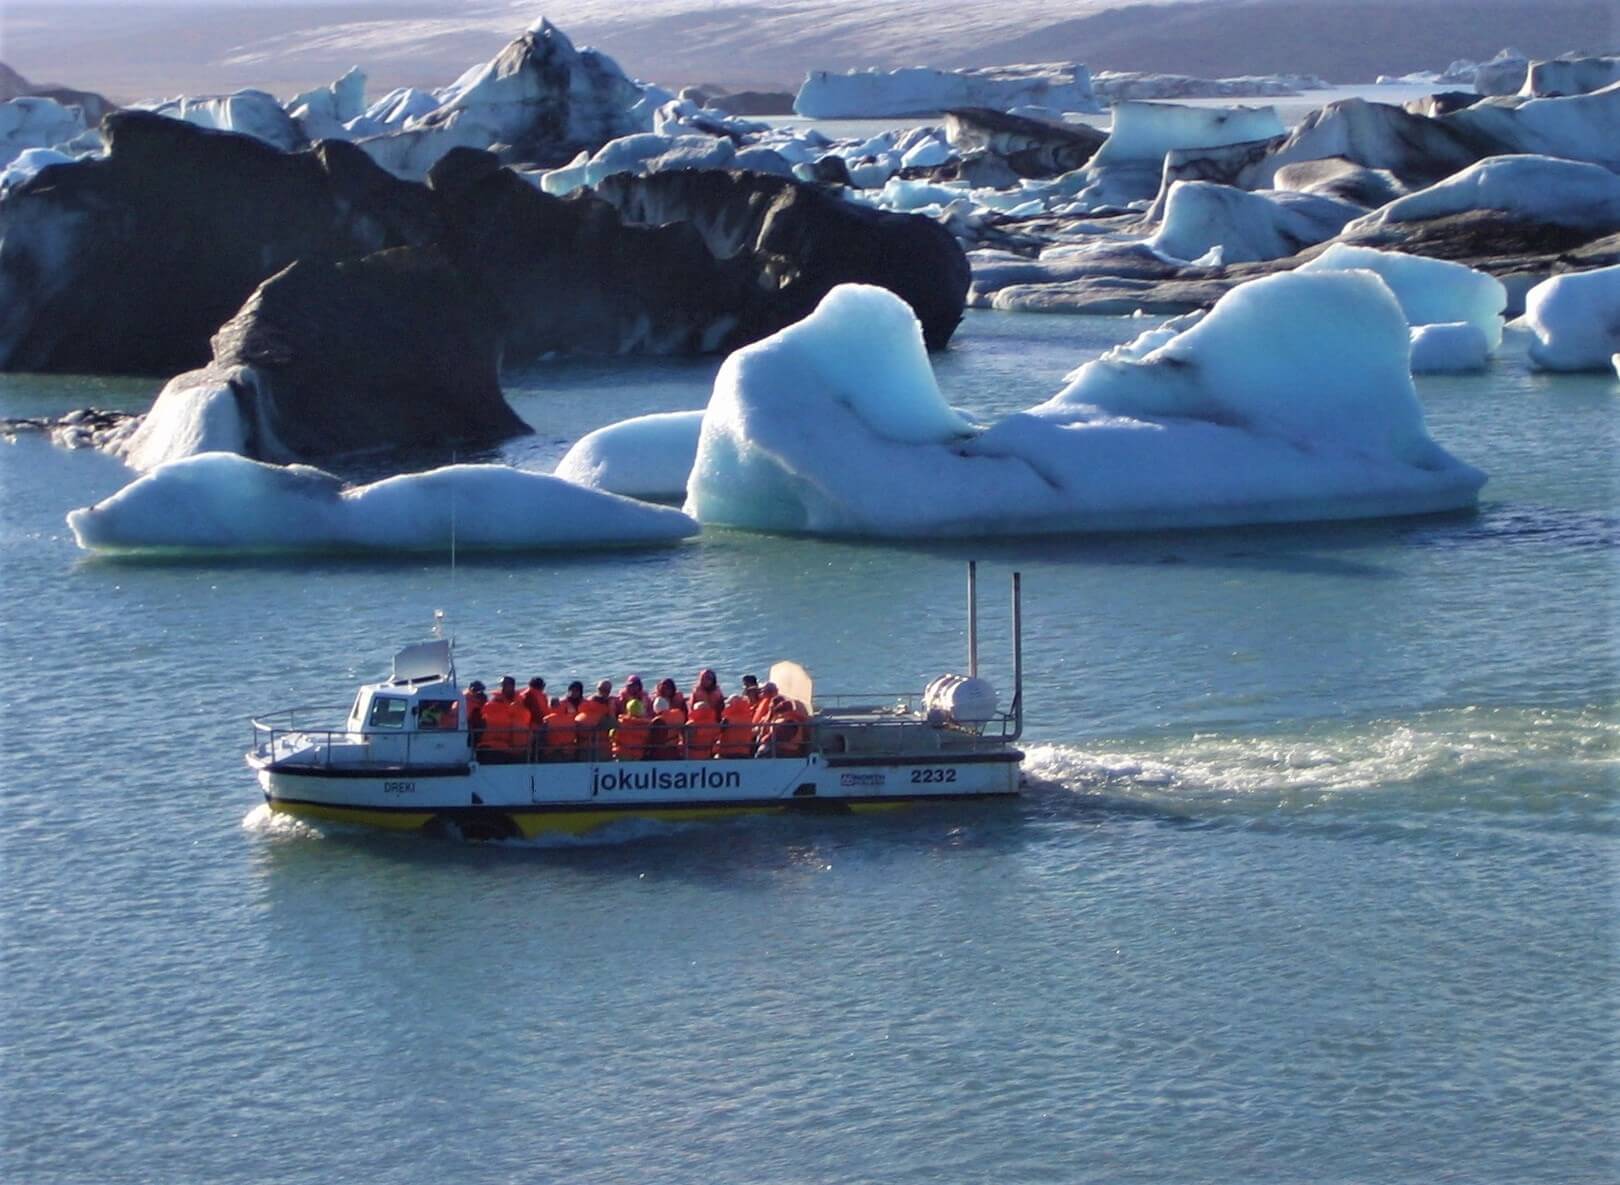 Excursión en barco anfibio en la laguna glaciar Jokulsarlon en Islandia.